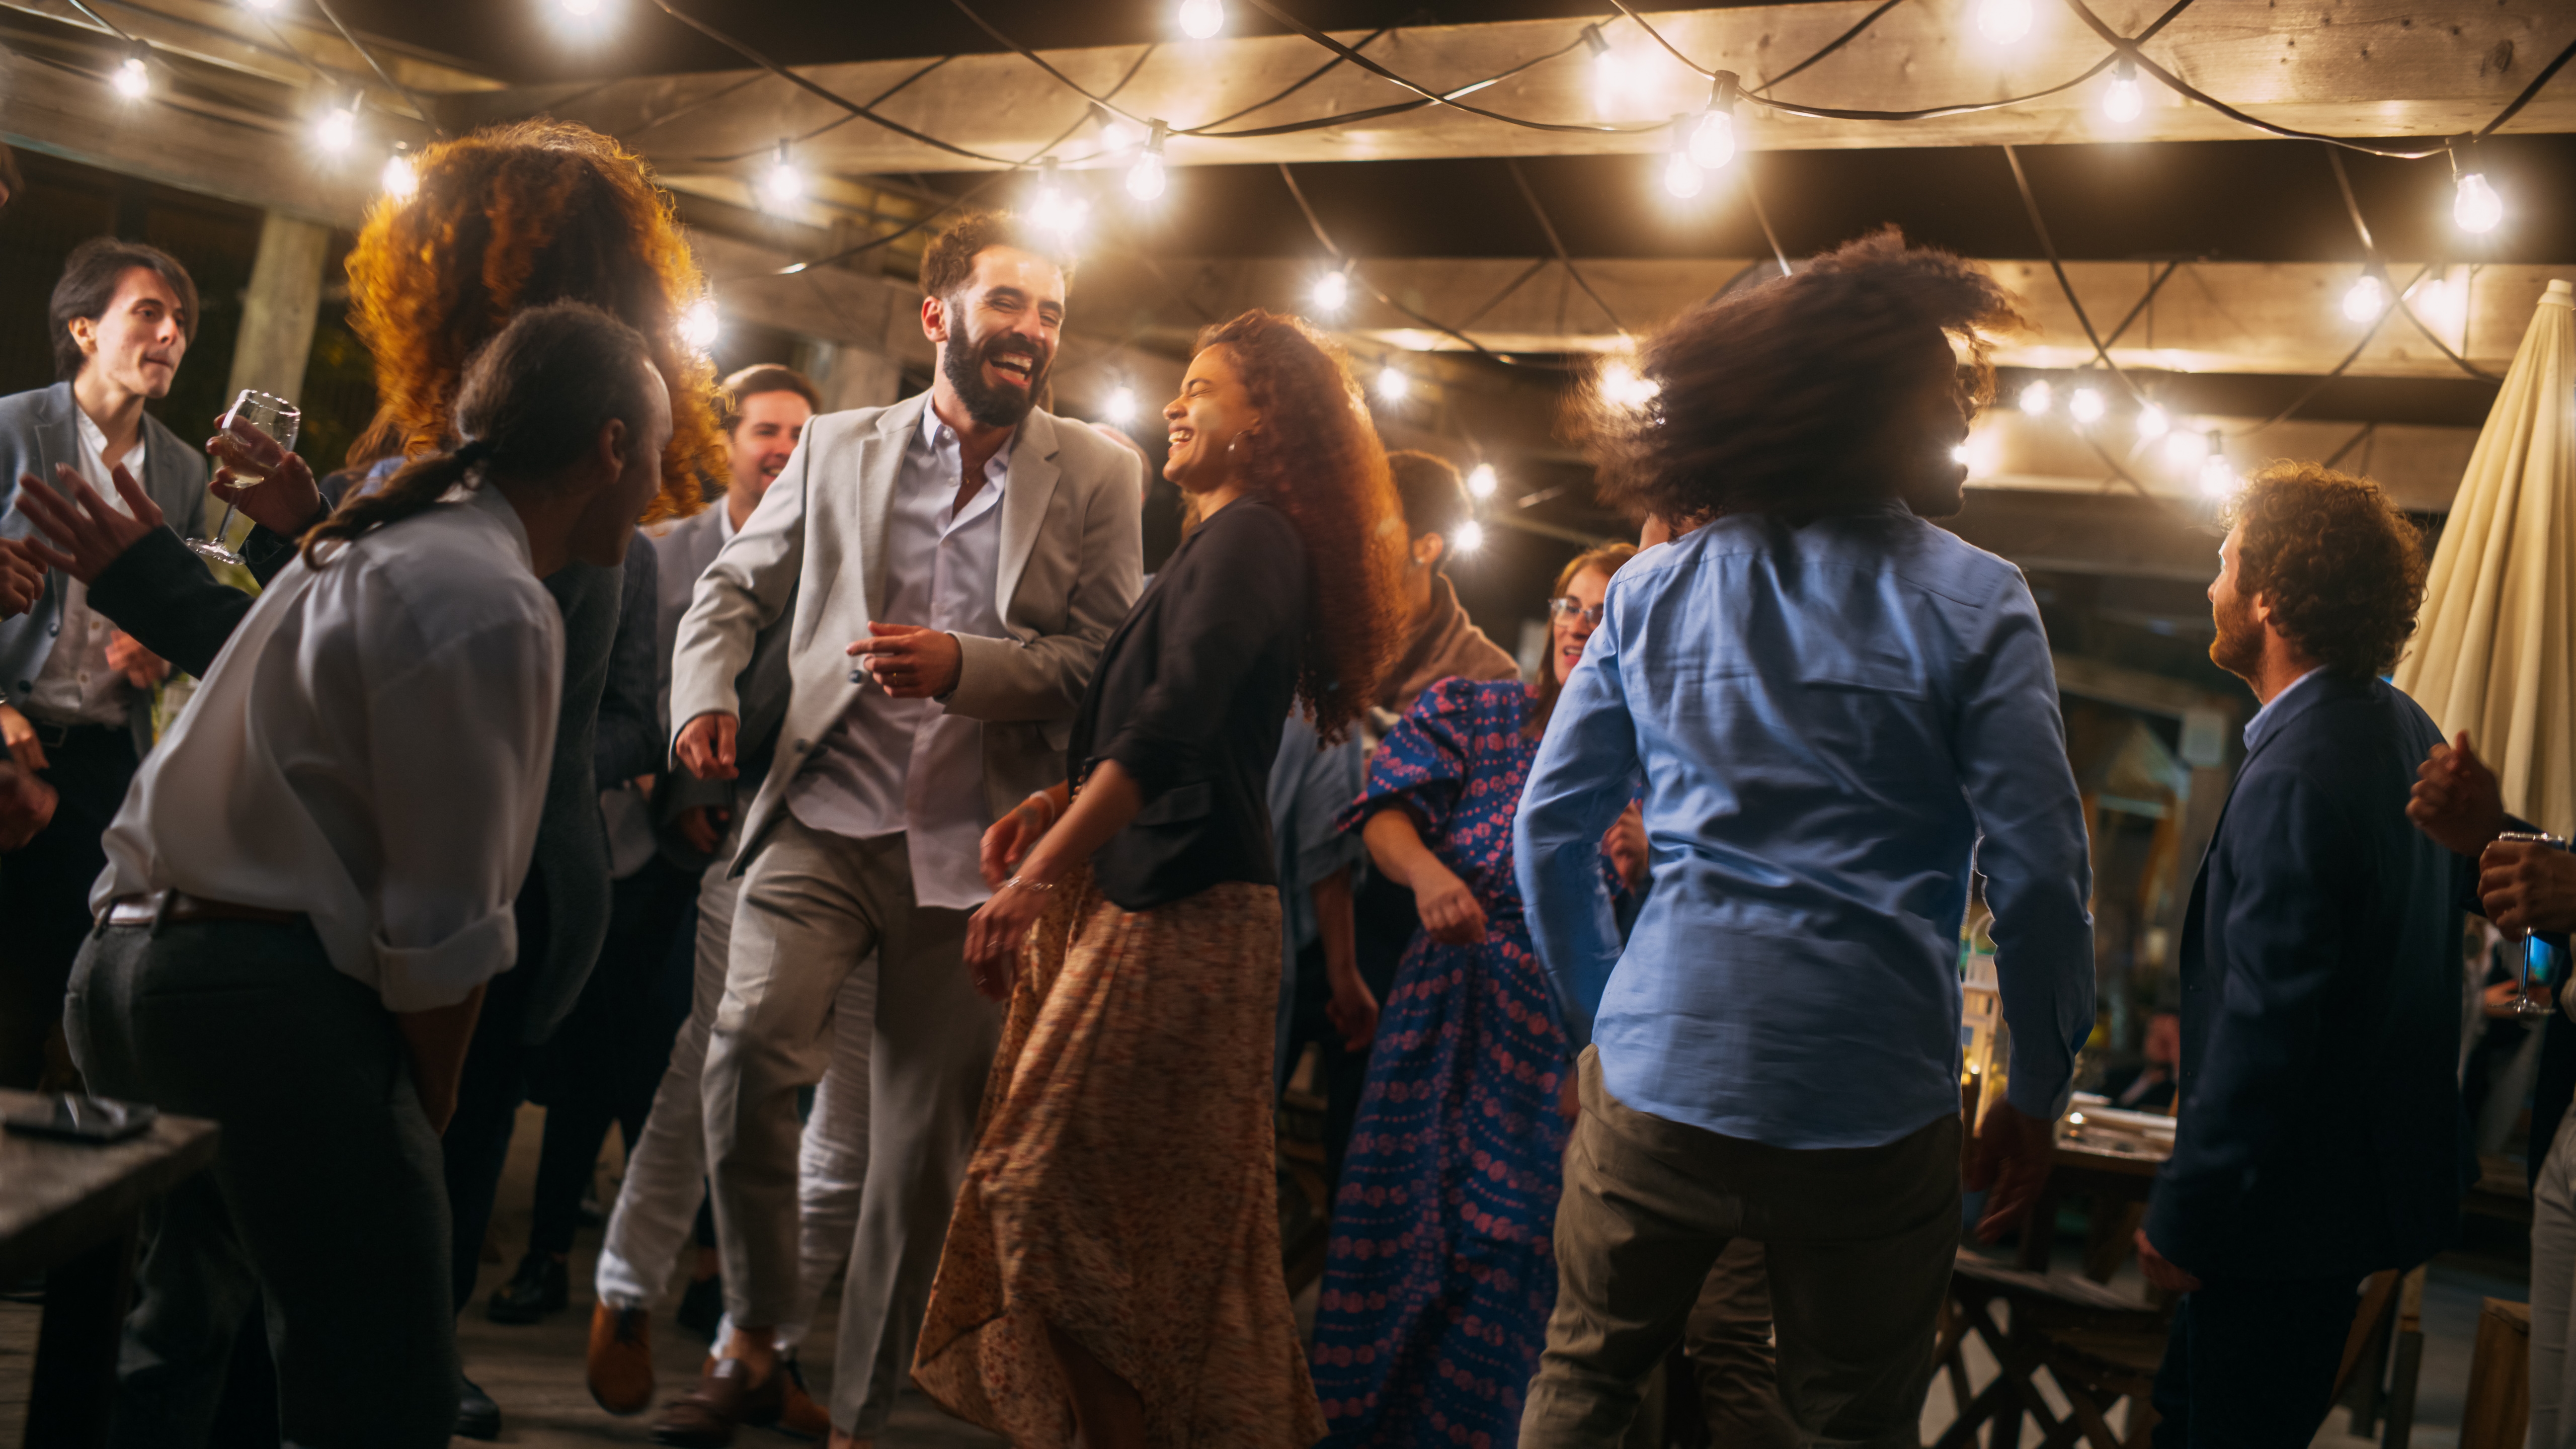 Des gens dansent ensemble lors d'une réception de mariage | Source : Shutterstock